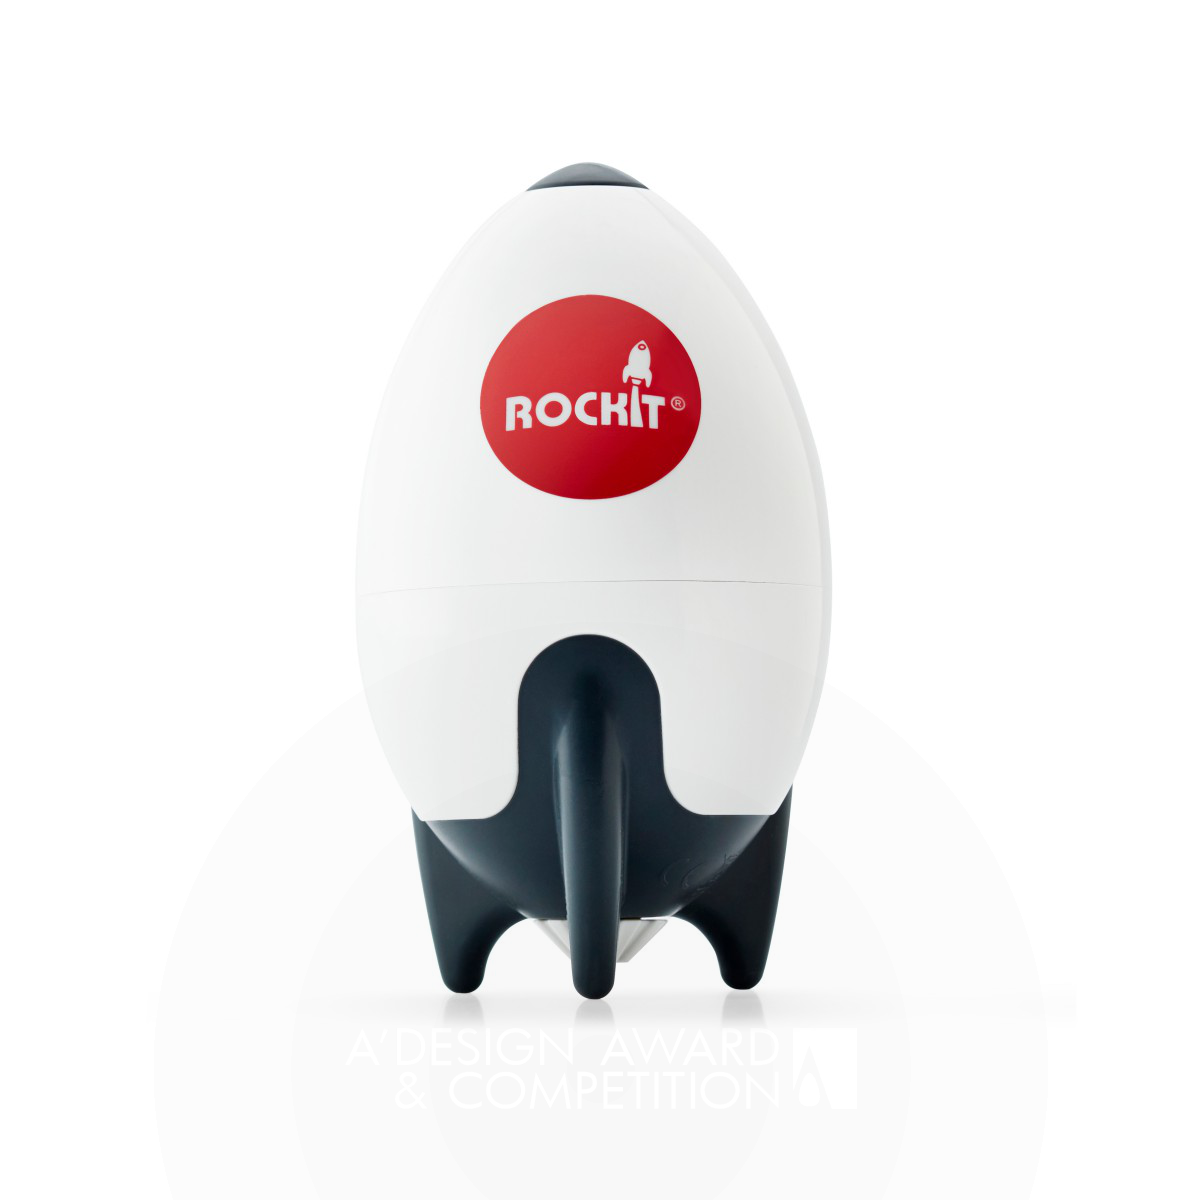 Rockit : Le Berceau Portable pour Poussettes qui Apaise les Bébés